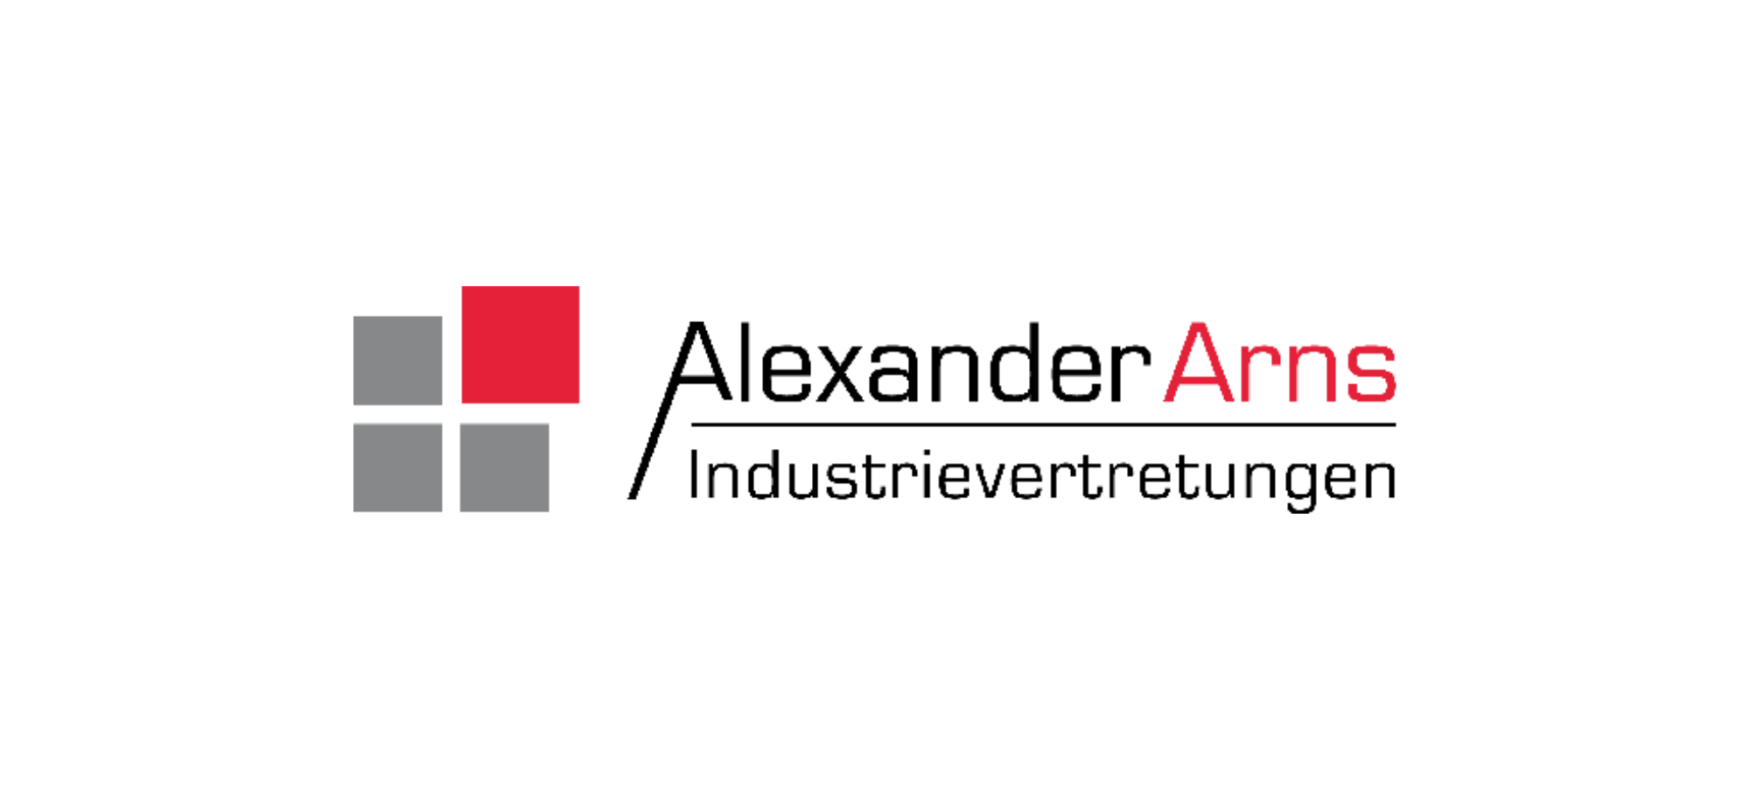 IV Alexander Arns